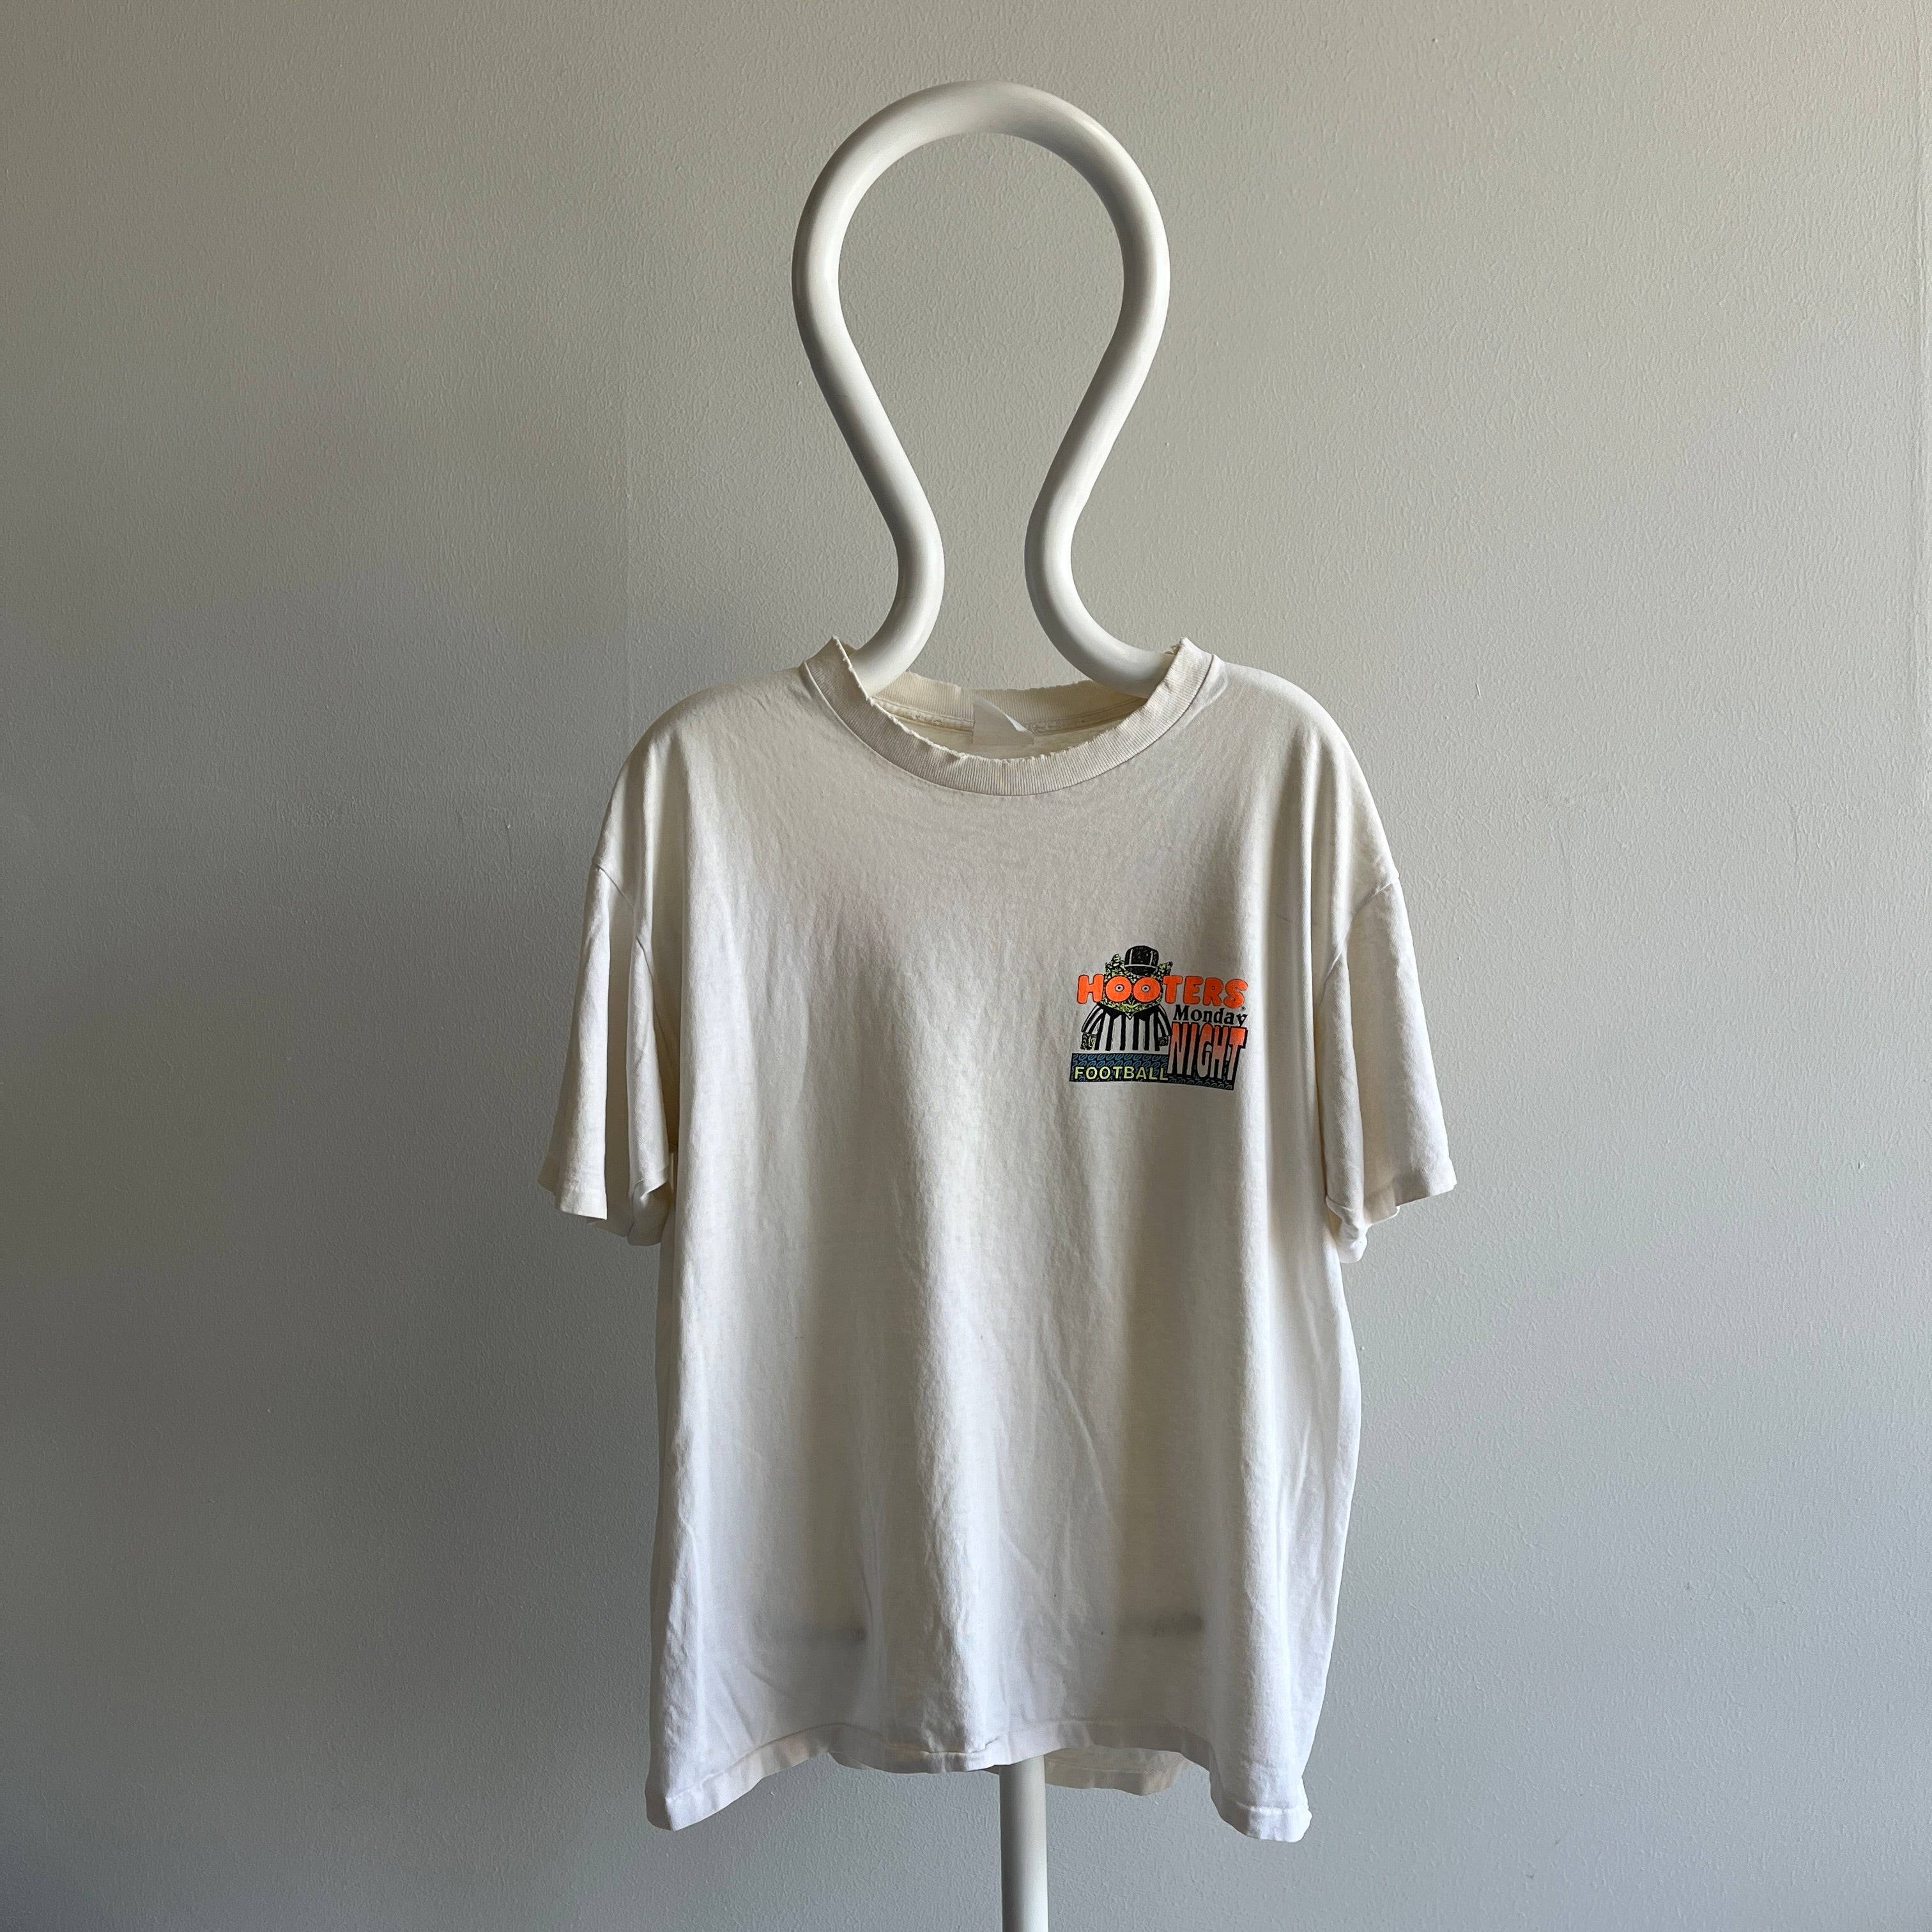 T-shirt en lambeaux et usé de football du lundi soir de Hooter des années 1990